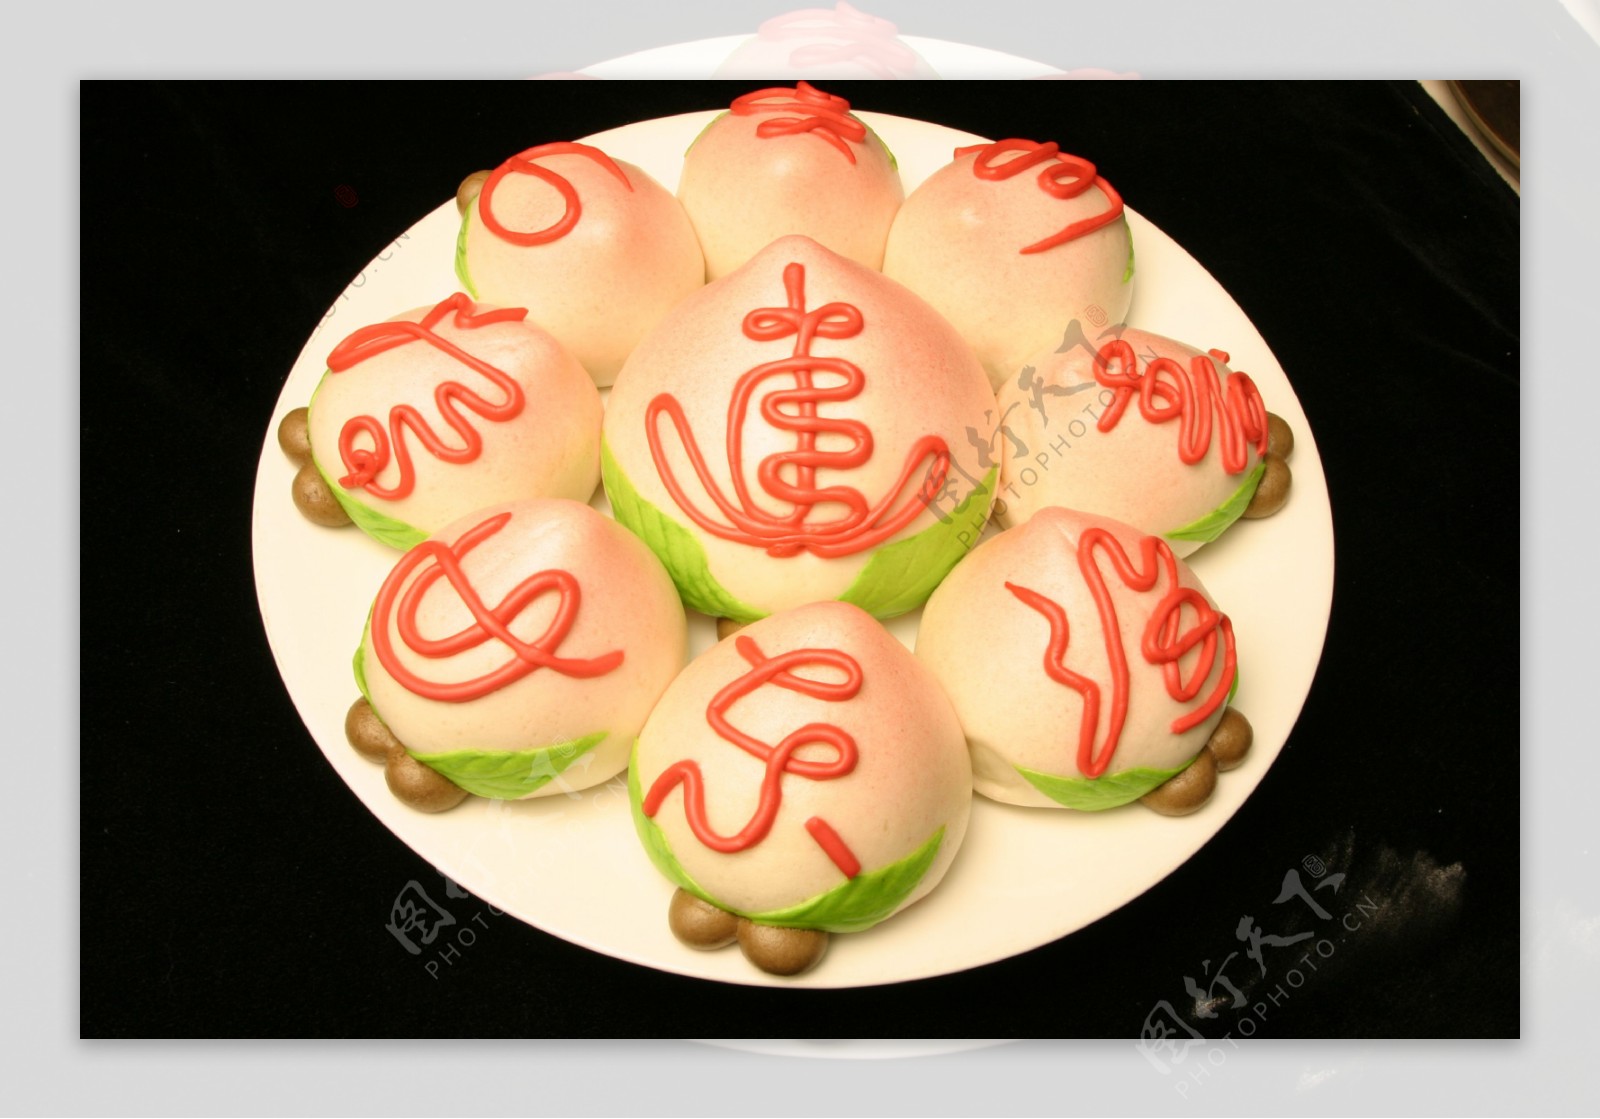 【3层60大寿蛋糕】北京生日蛋糕预订 祝寿蛋糕 多层寿桃蛋糕配送_唯美dangao巧克力